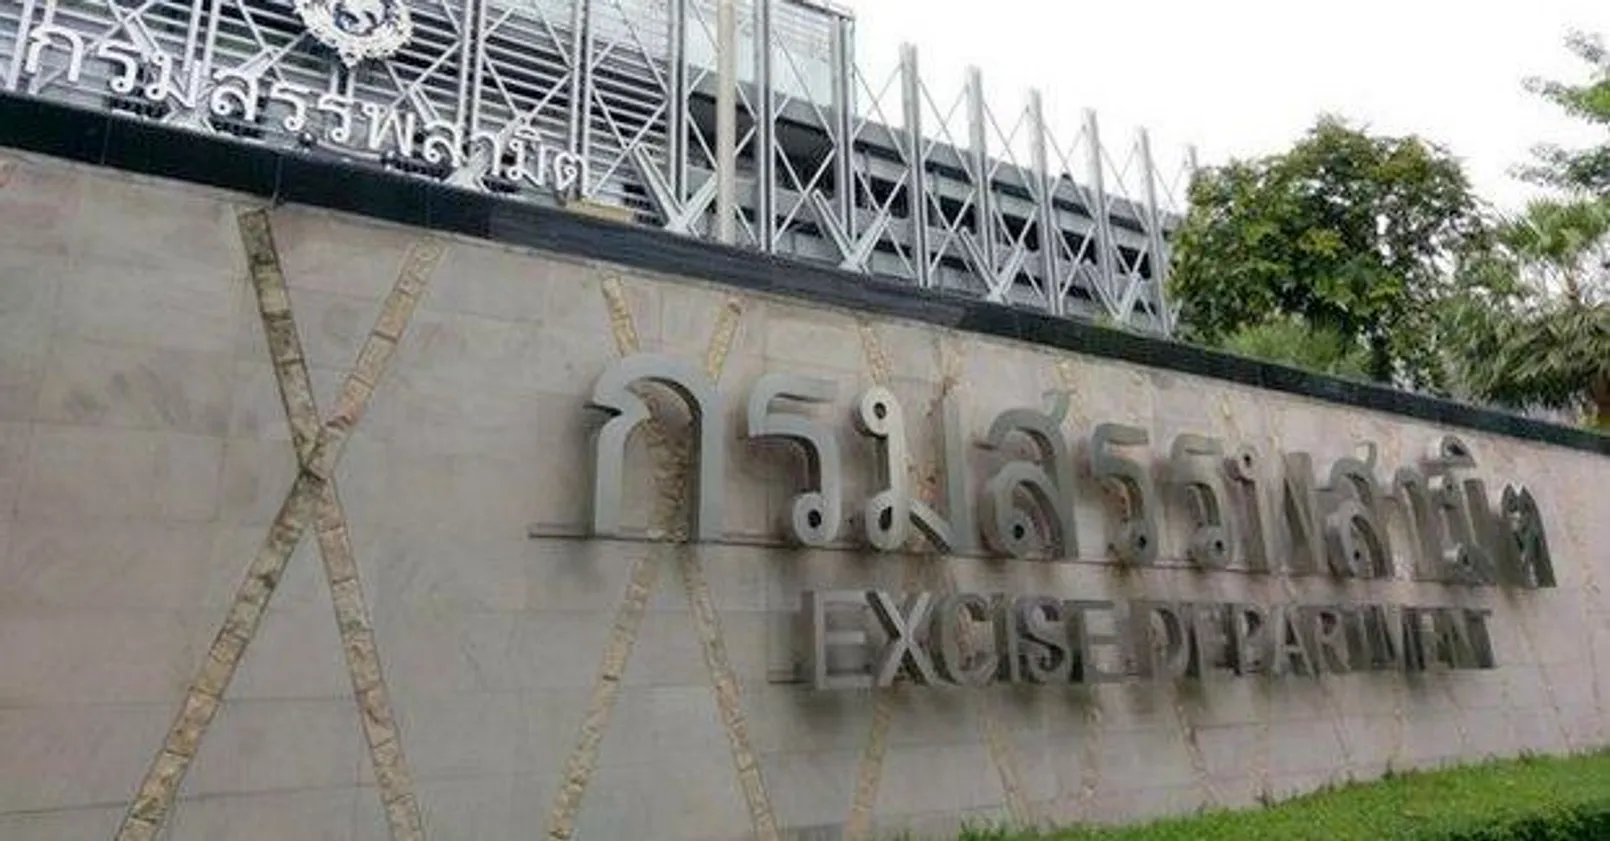 Thai Excise Department.jpg